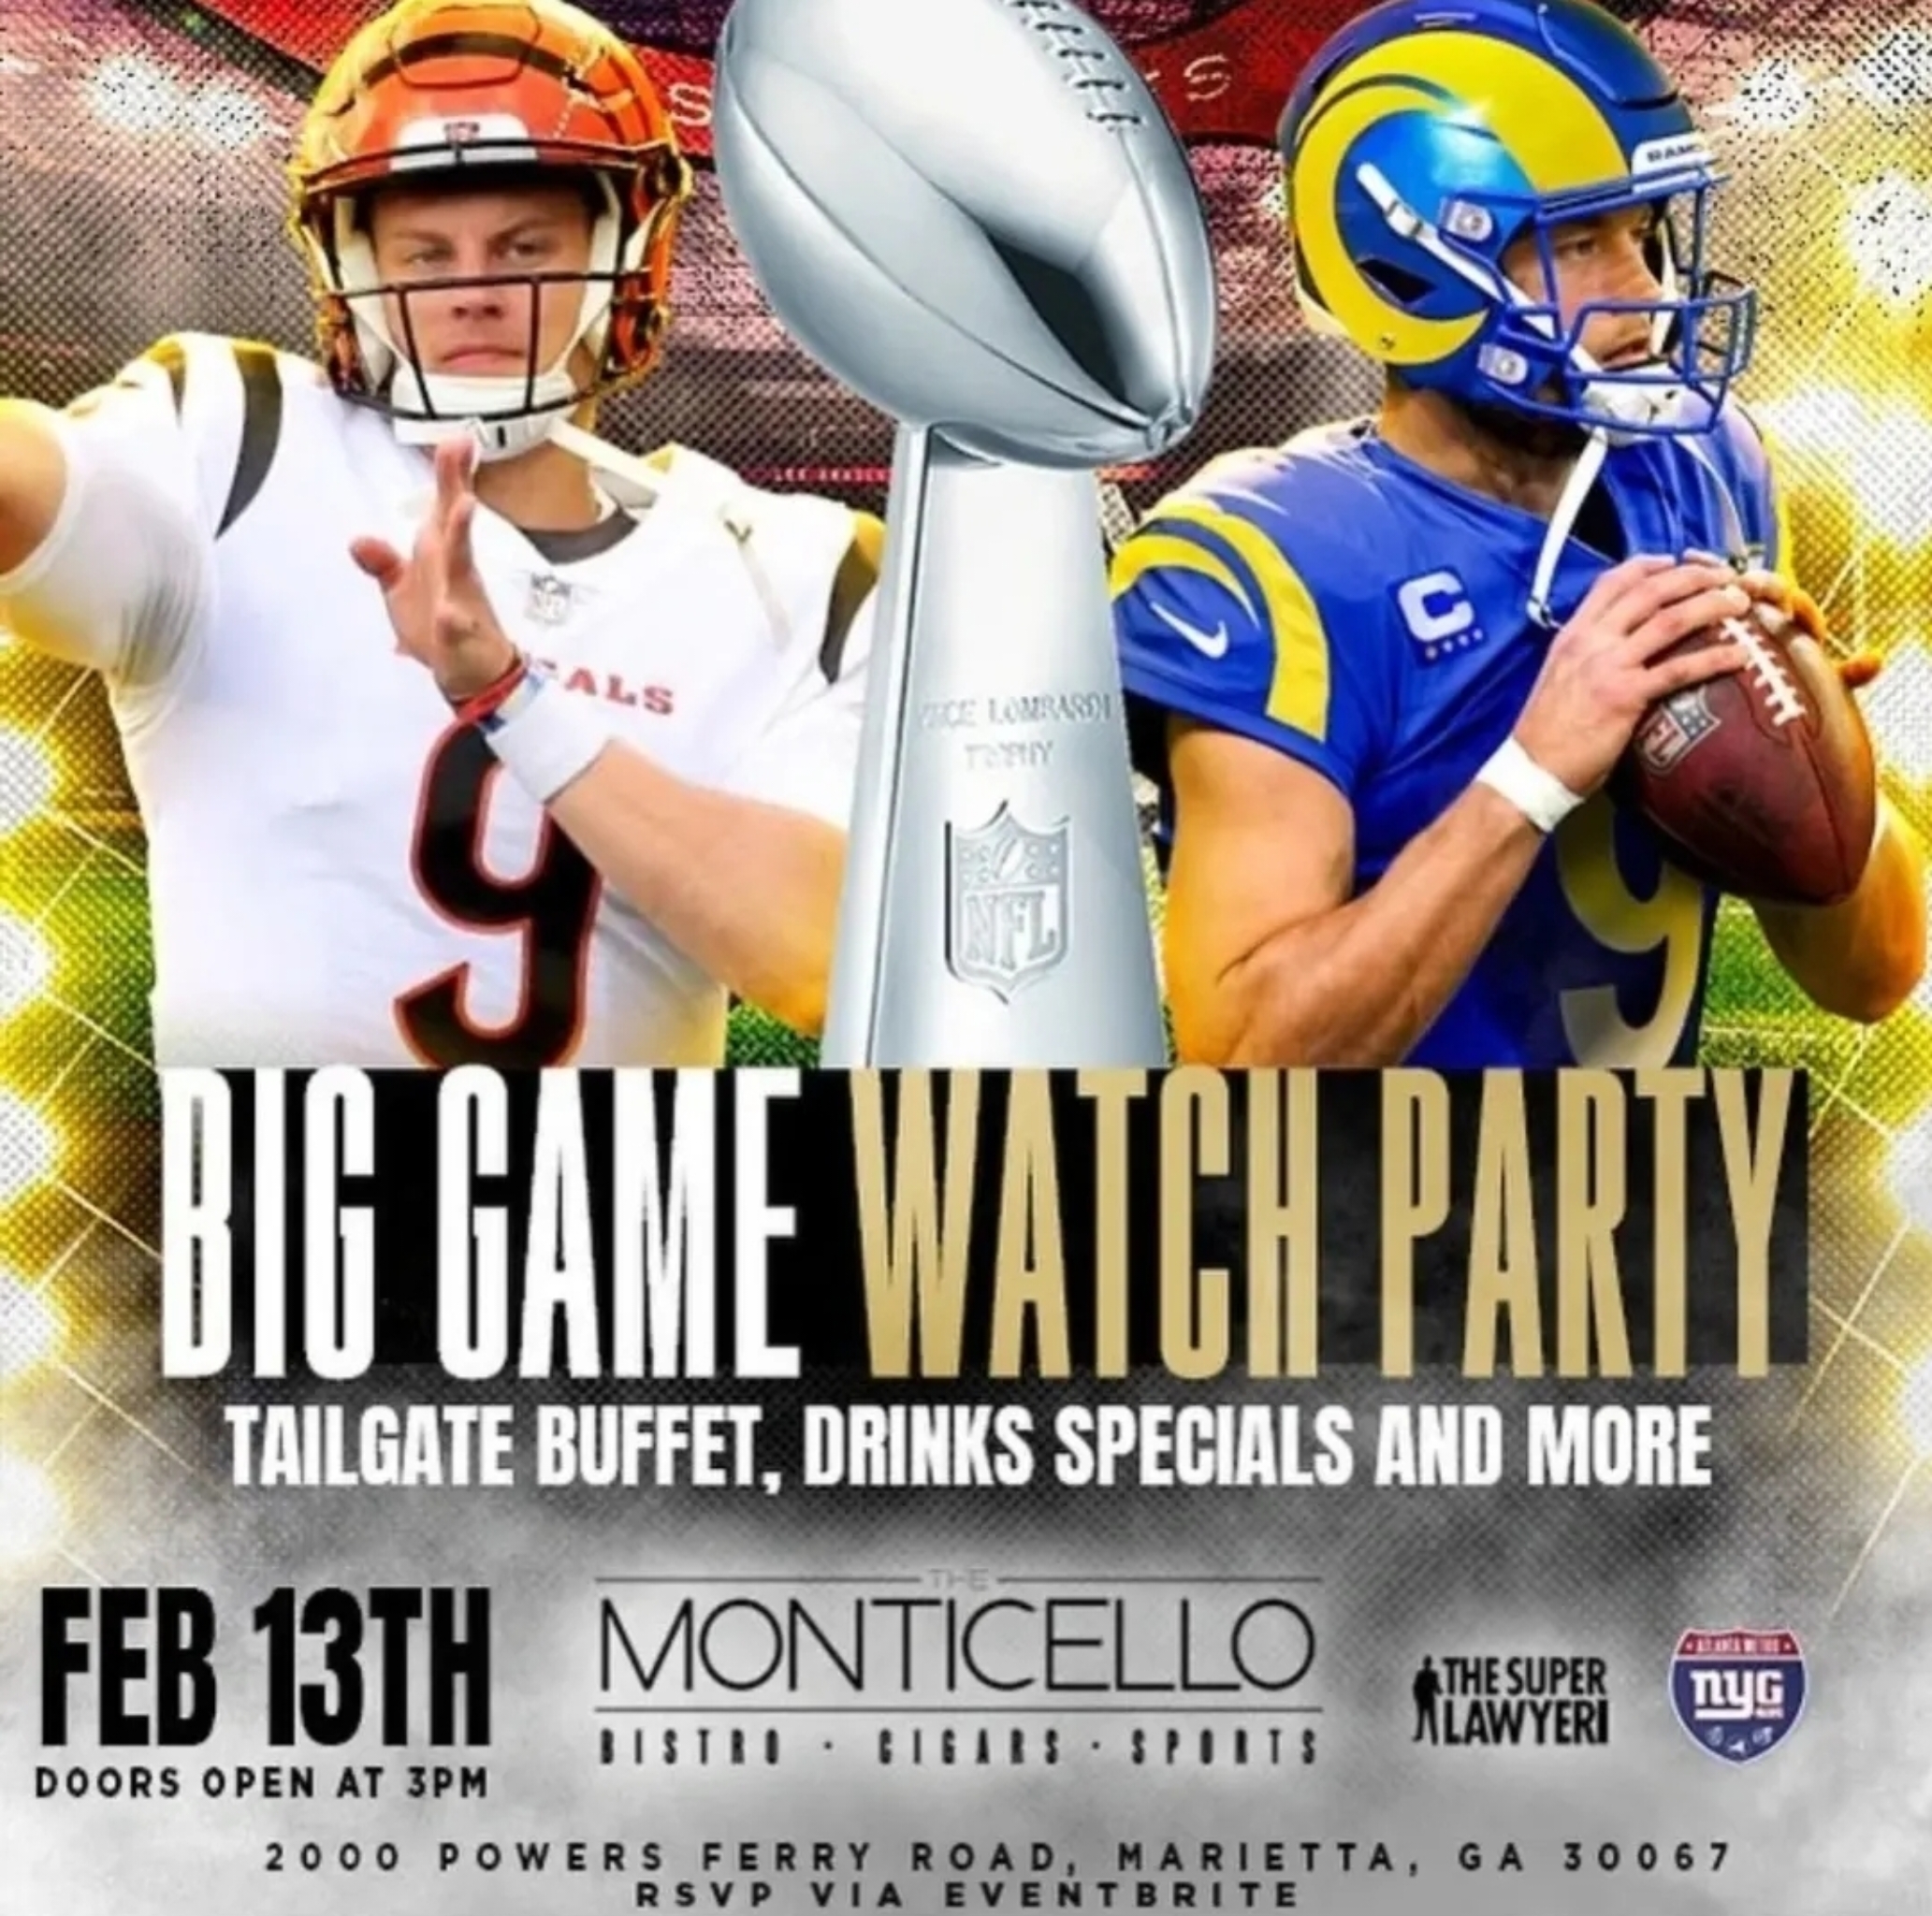 Super Bowl Watch Parties in Atlanta